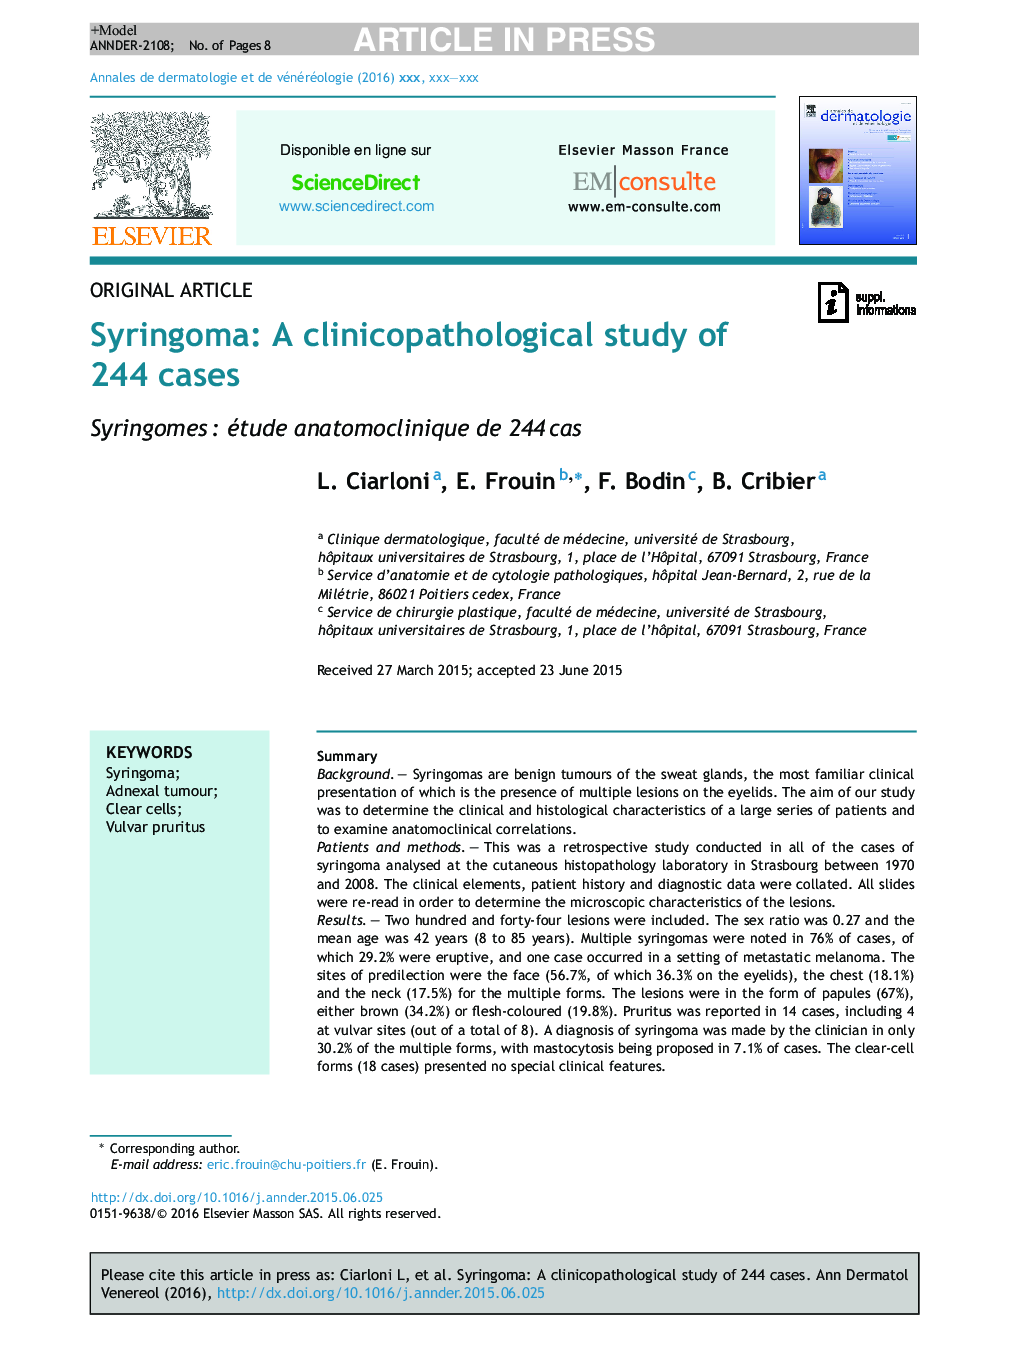 سیرینگو: یک مطالعه کلینیکوپاتولوژیک 244 مورد است 